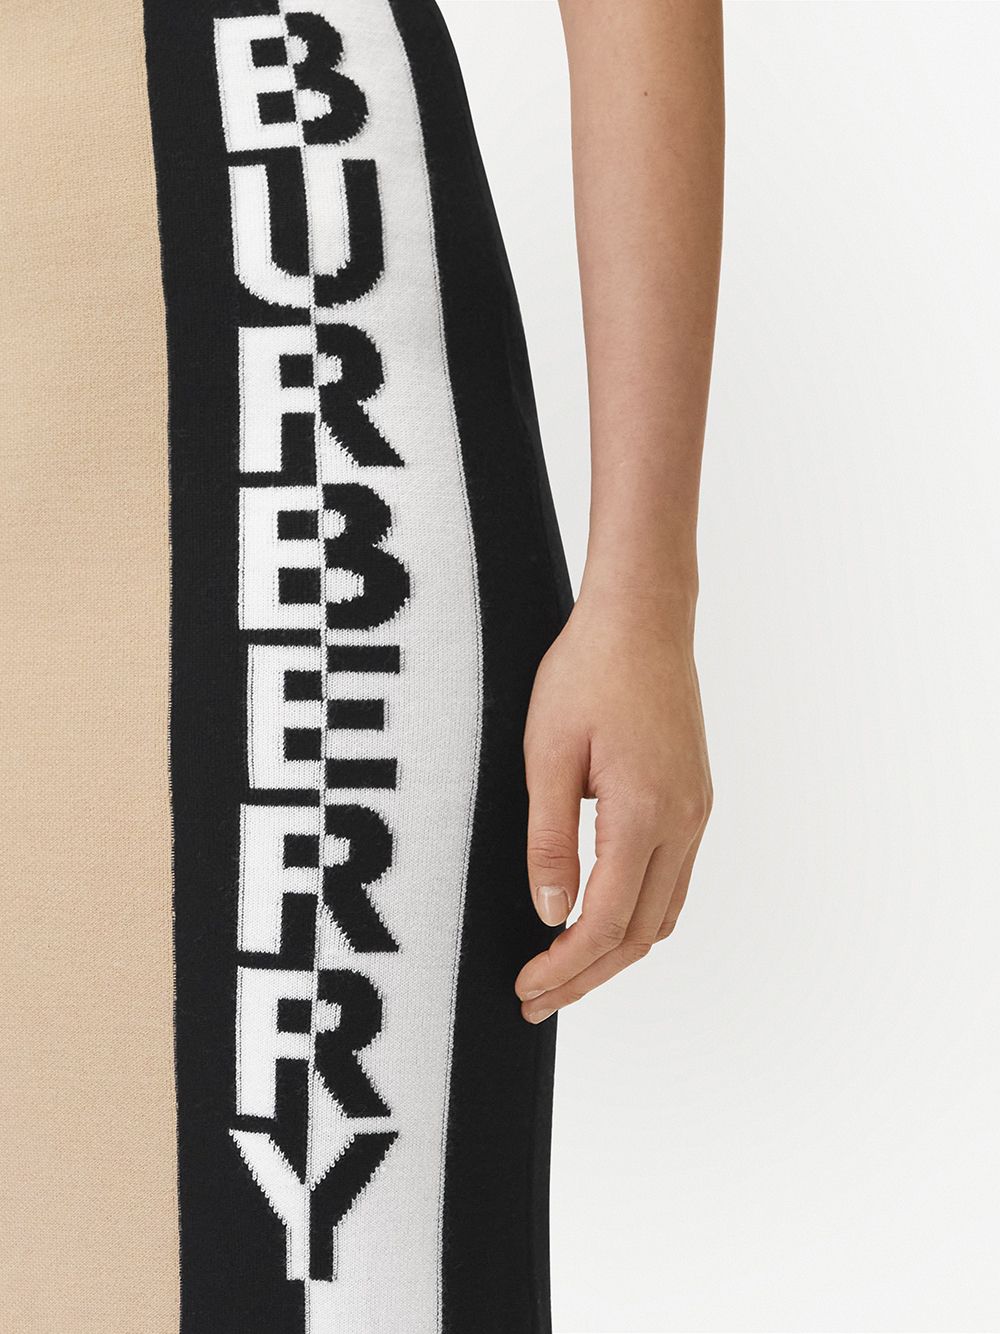 фото Burberry юбка с жаккардовым логотипом